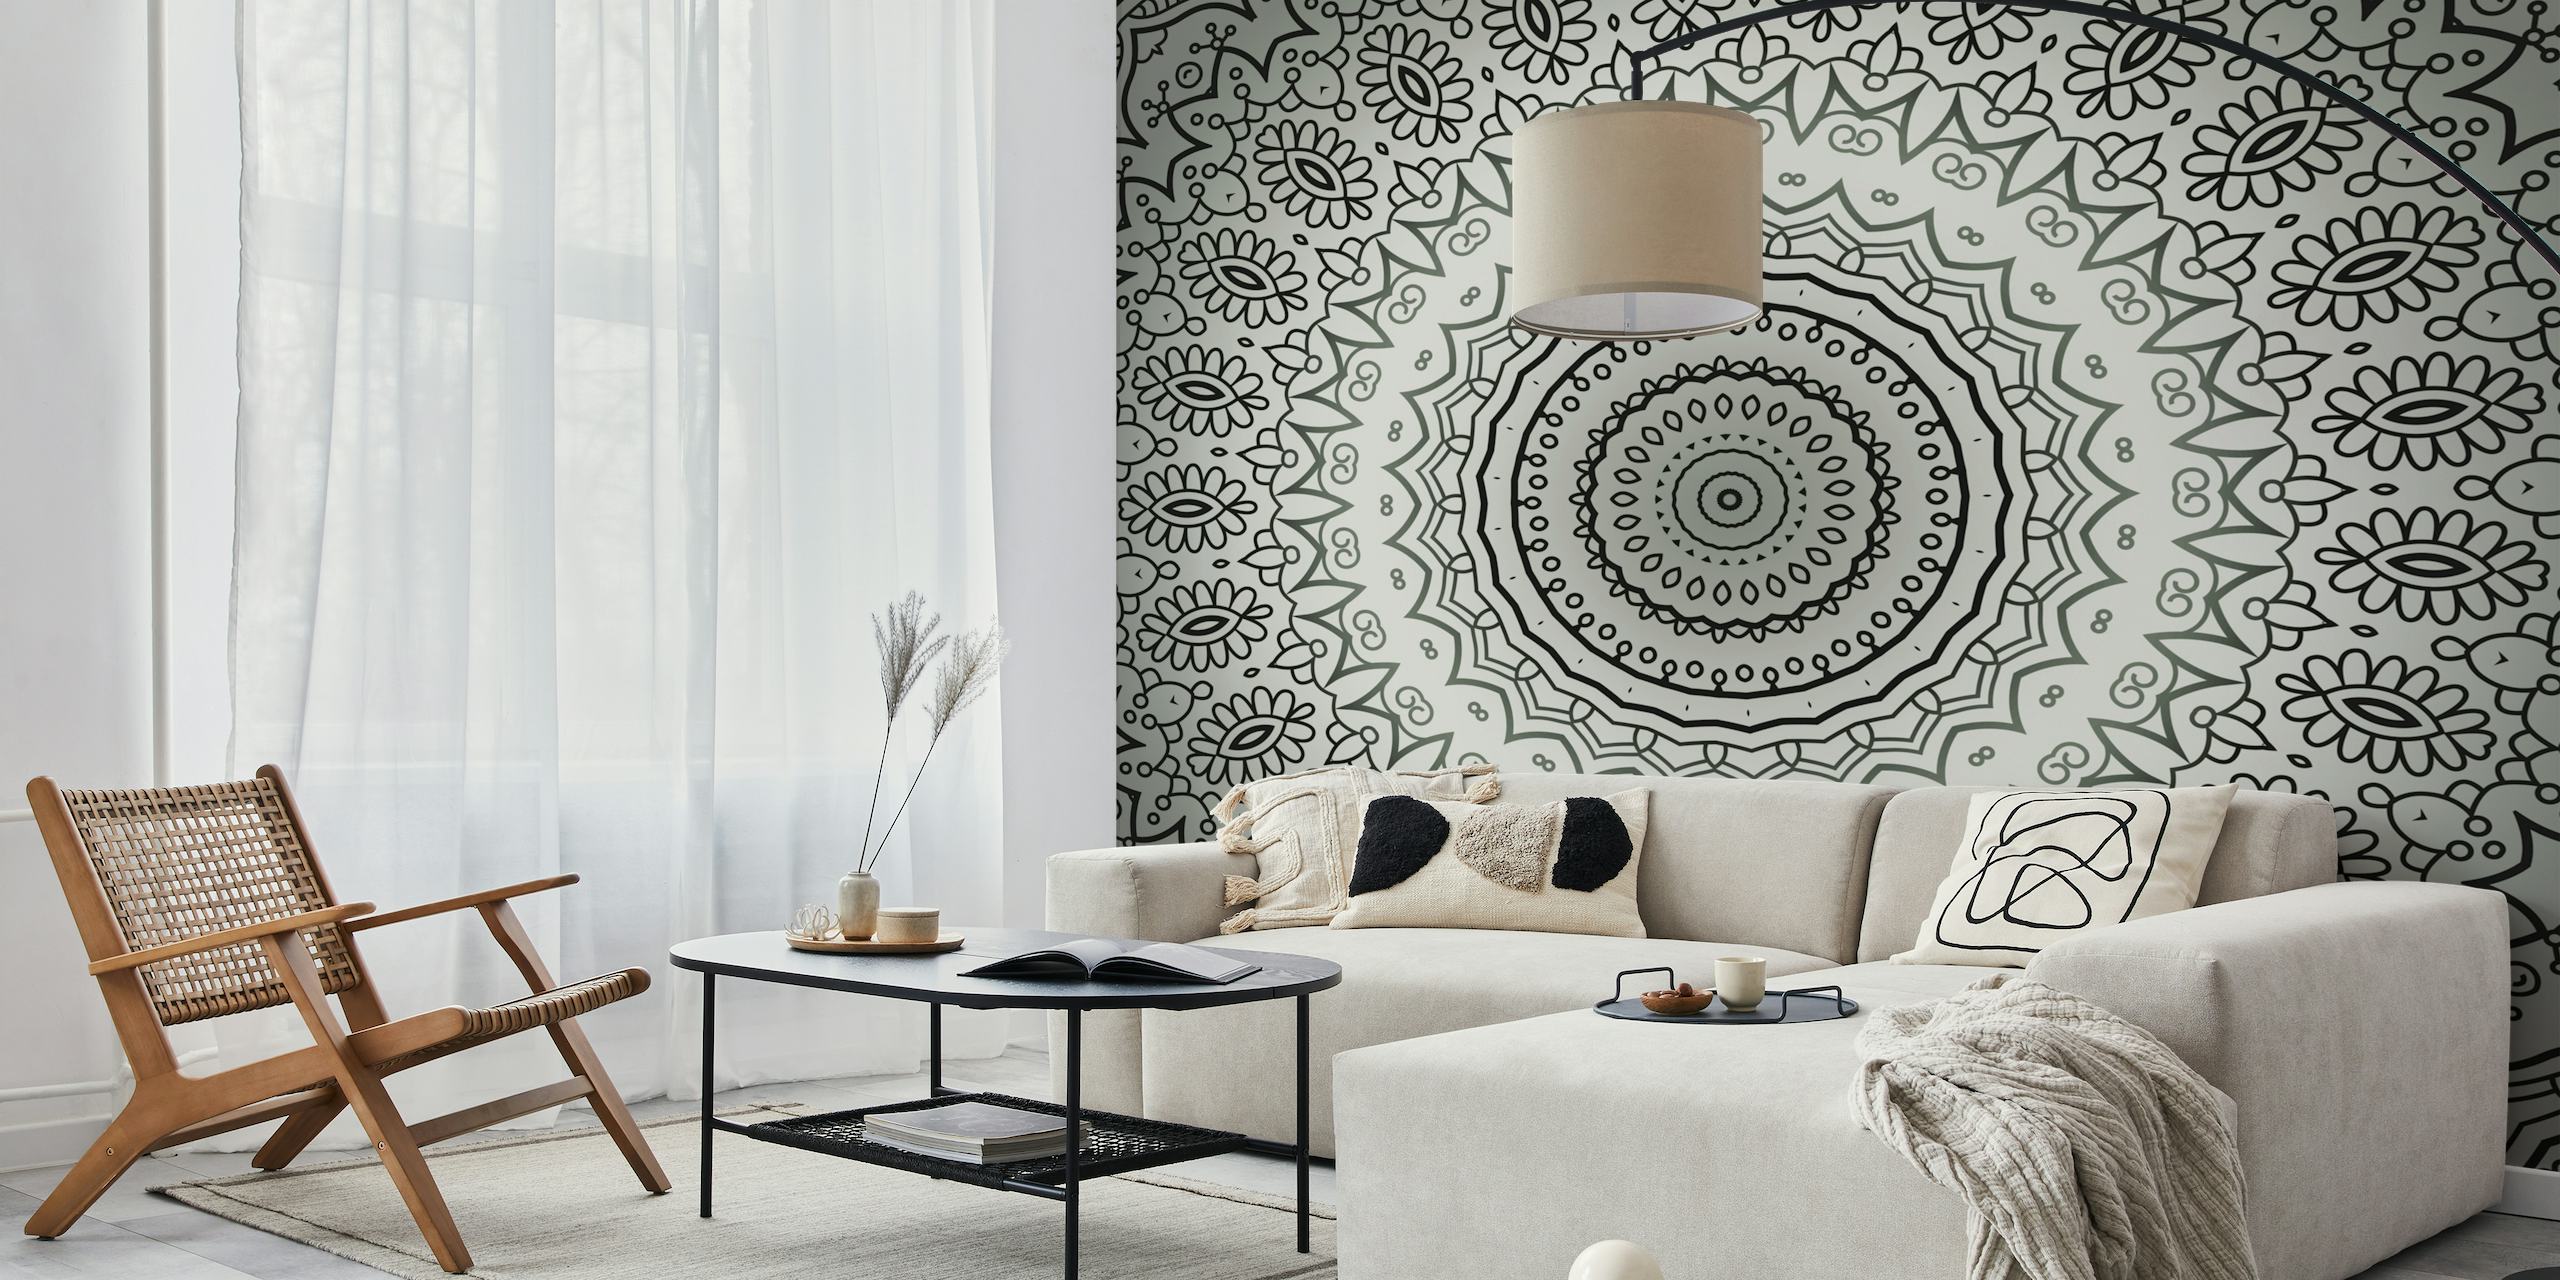 Elegante mandala-muurschildering in grijstinten met ingewikkelde patronen